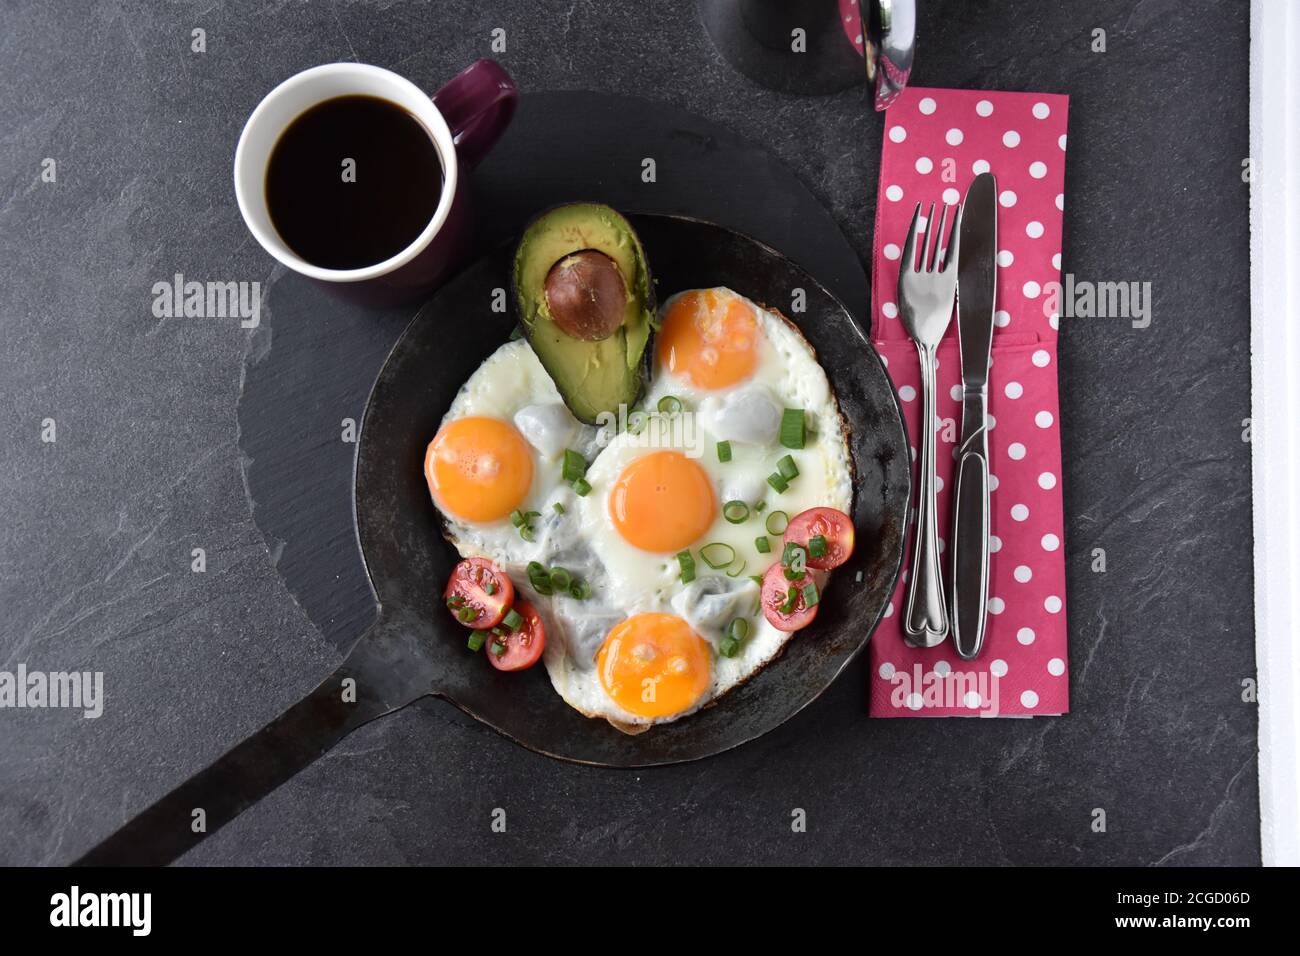 Spiegeleier Sonnenseite oben in einer Pfanne mit einem Piece of Avocado - ketogenes Frühstück Stockfoto